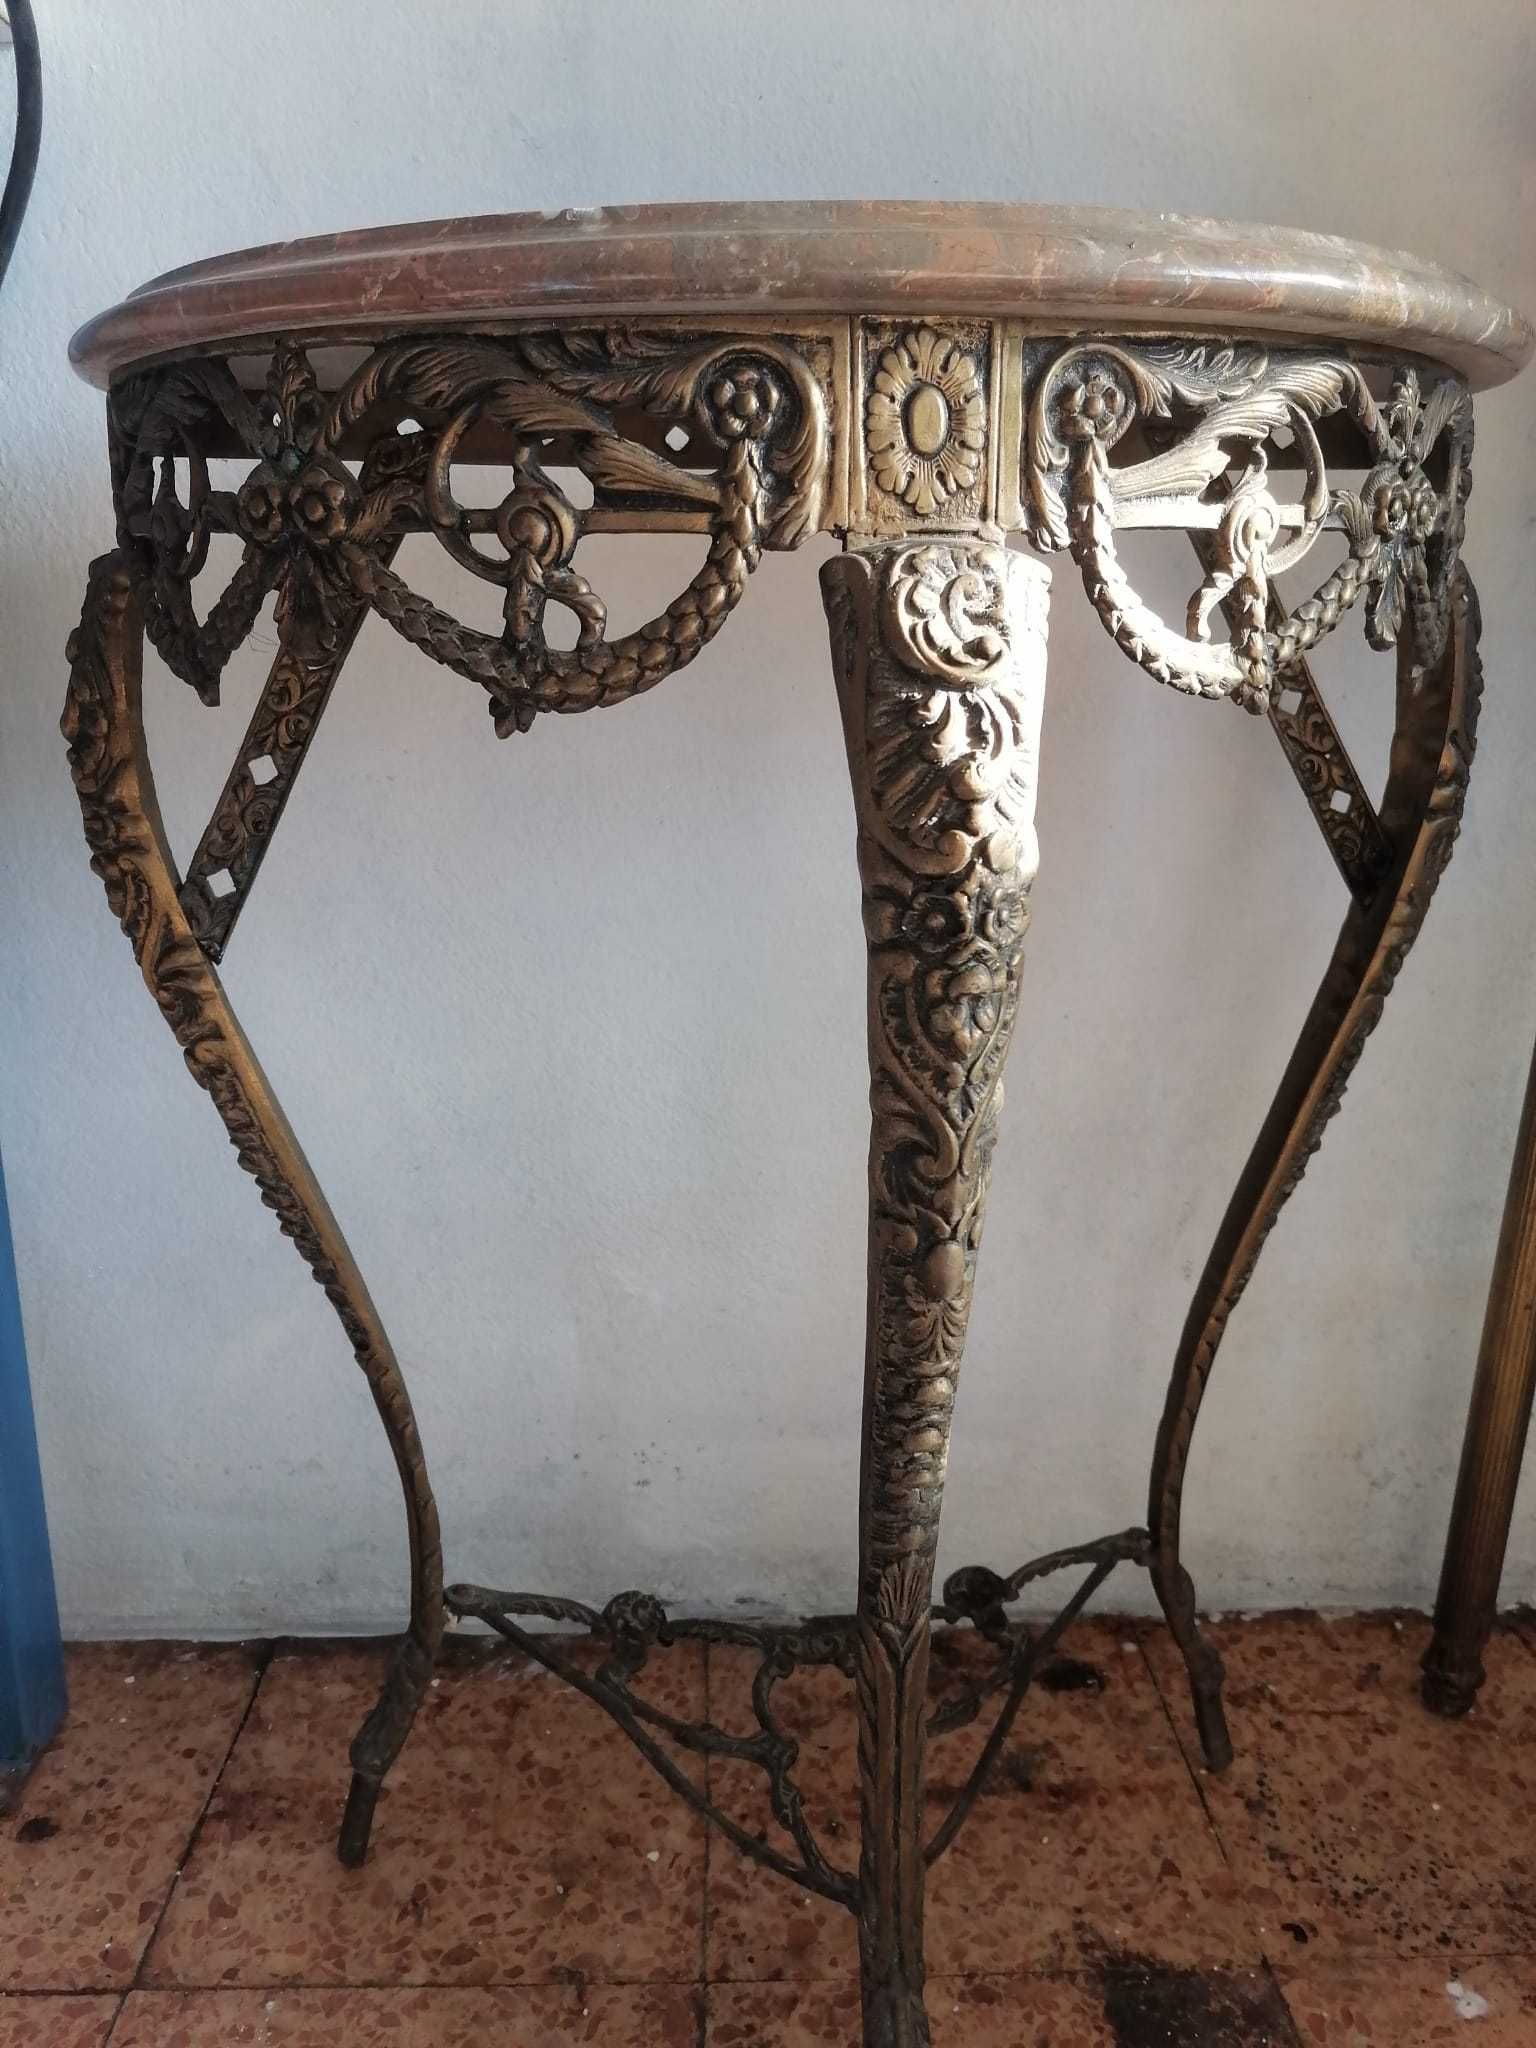 Mesa e espelho em bronze - Bom preço e bom estado